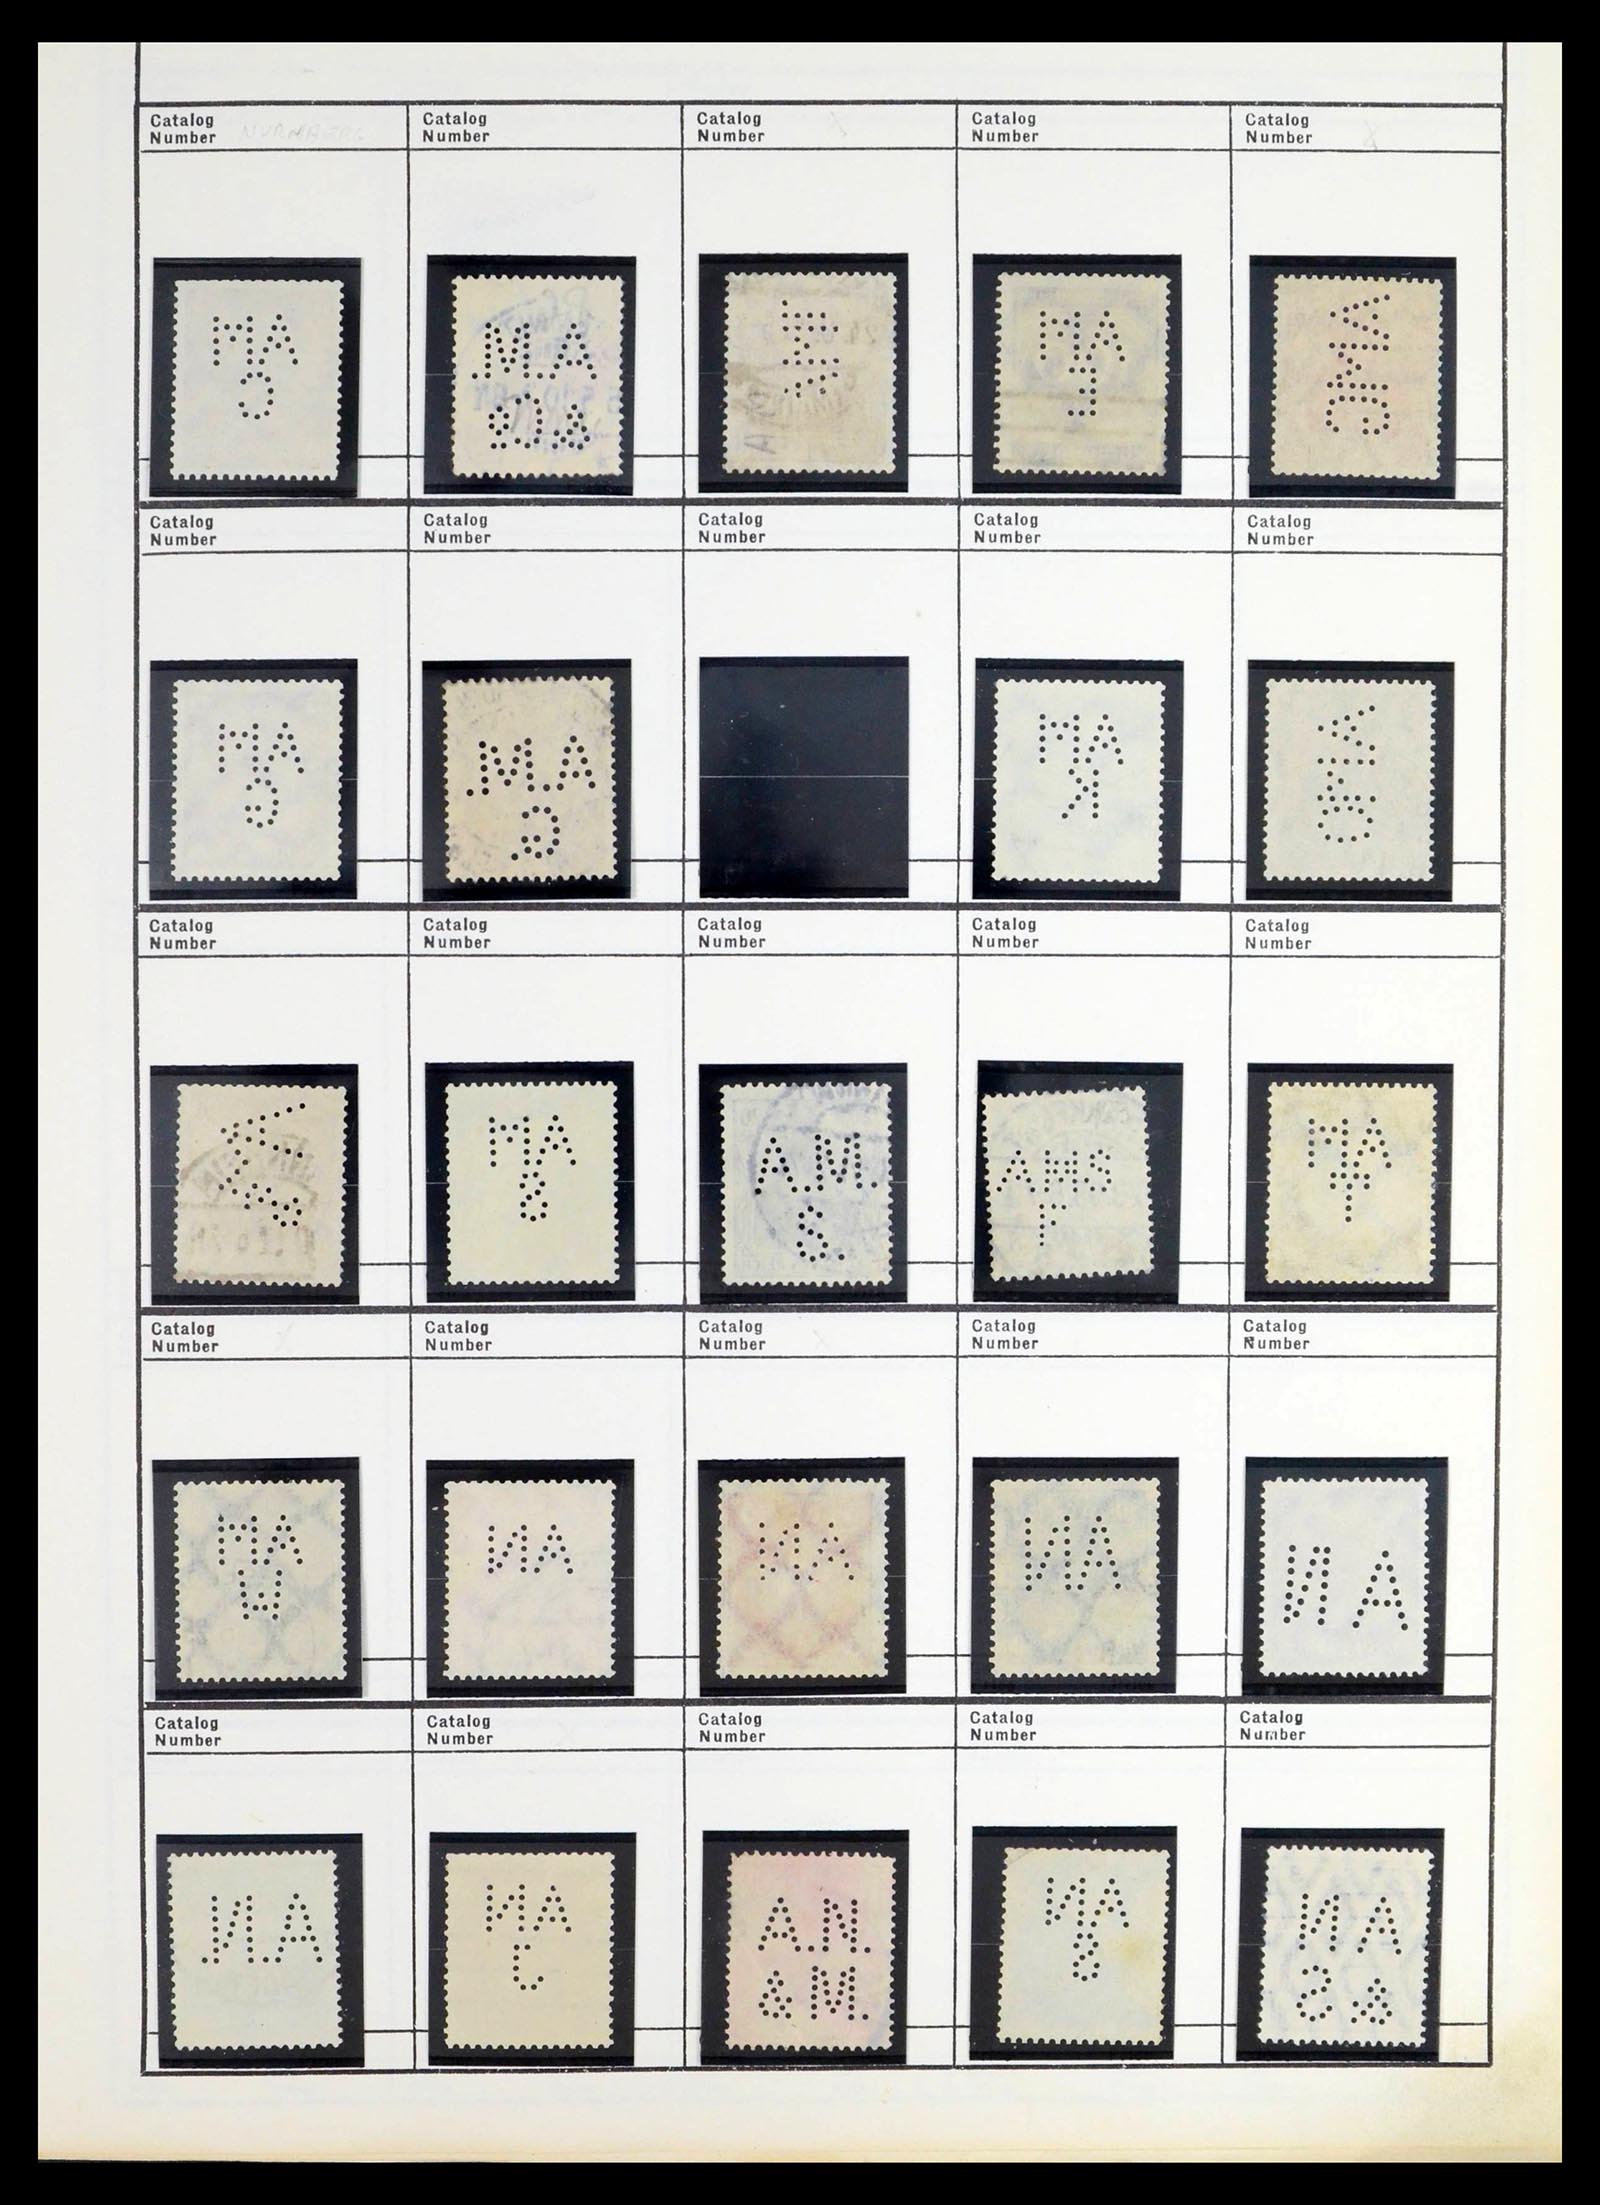 39480 0031 - Stamp collection 39480 German Reich perfins 1880-1955.